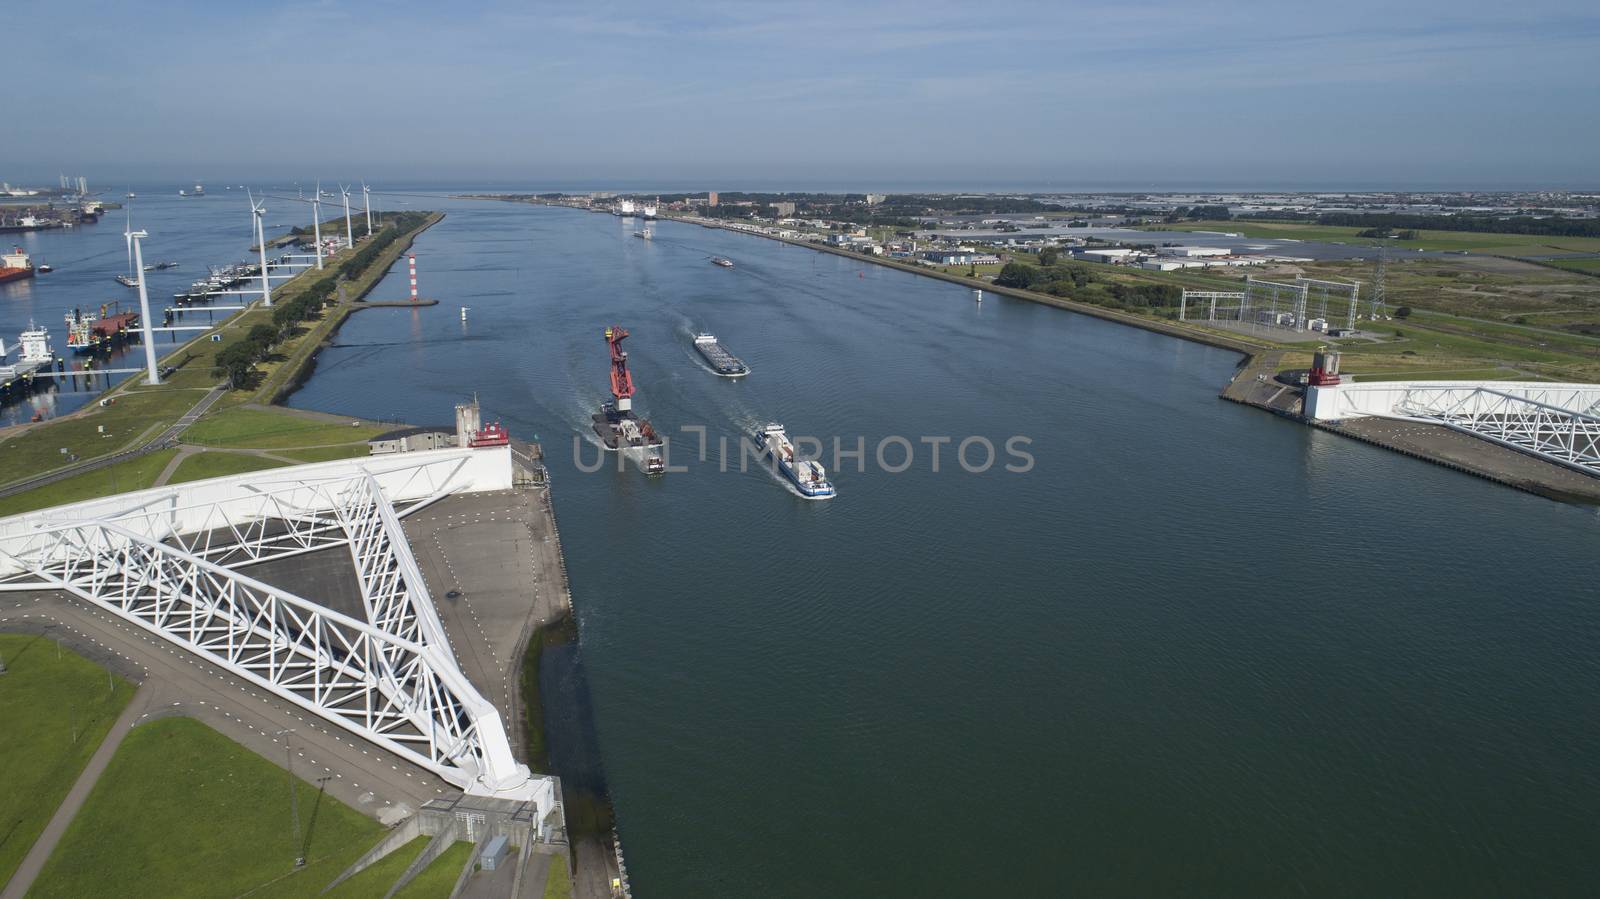 Aerial picture of Maeslantkering storm surge barrier on the Nieuwe Waterweg by Tjeerdkruse